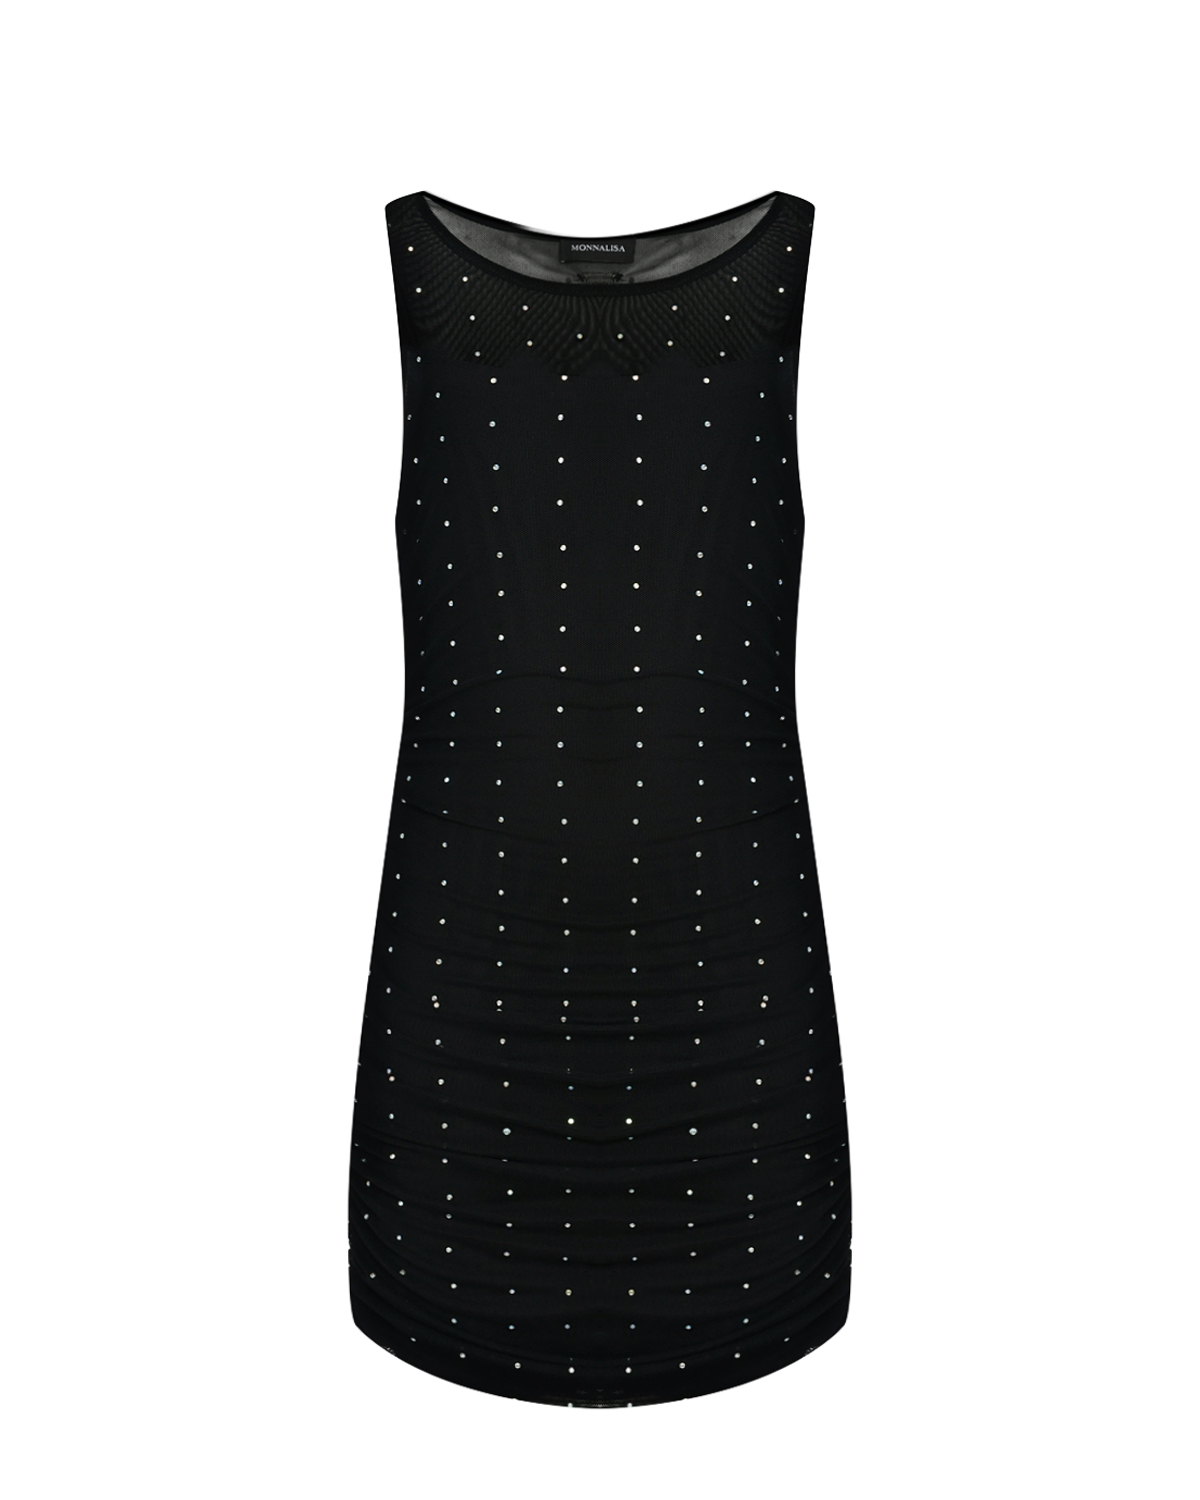 Платье черное со стразами Monnalisa, размер 140, цвет нет цвета - фото 1